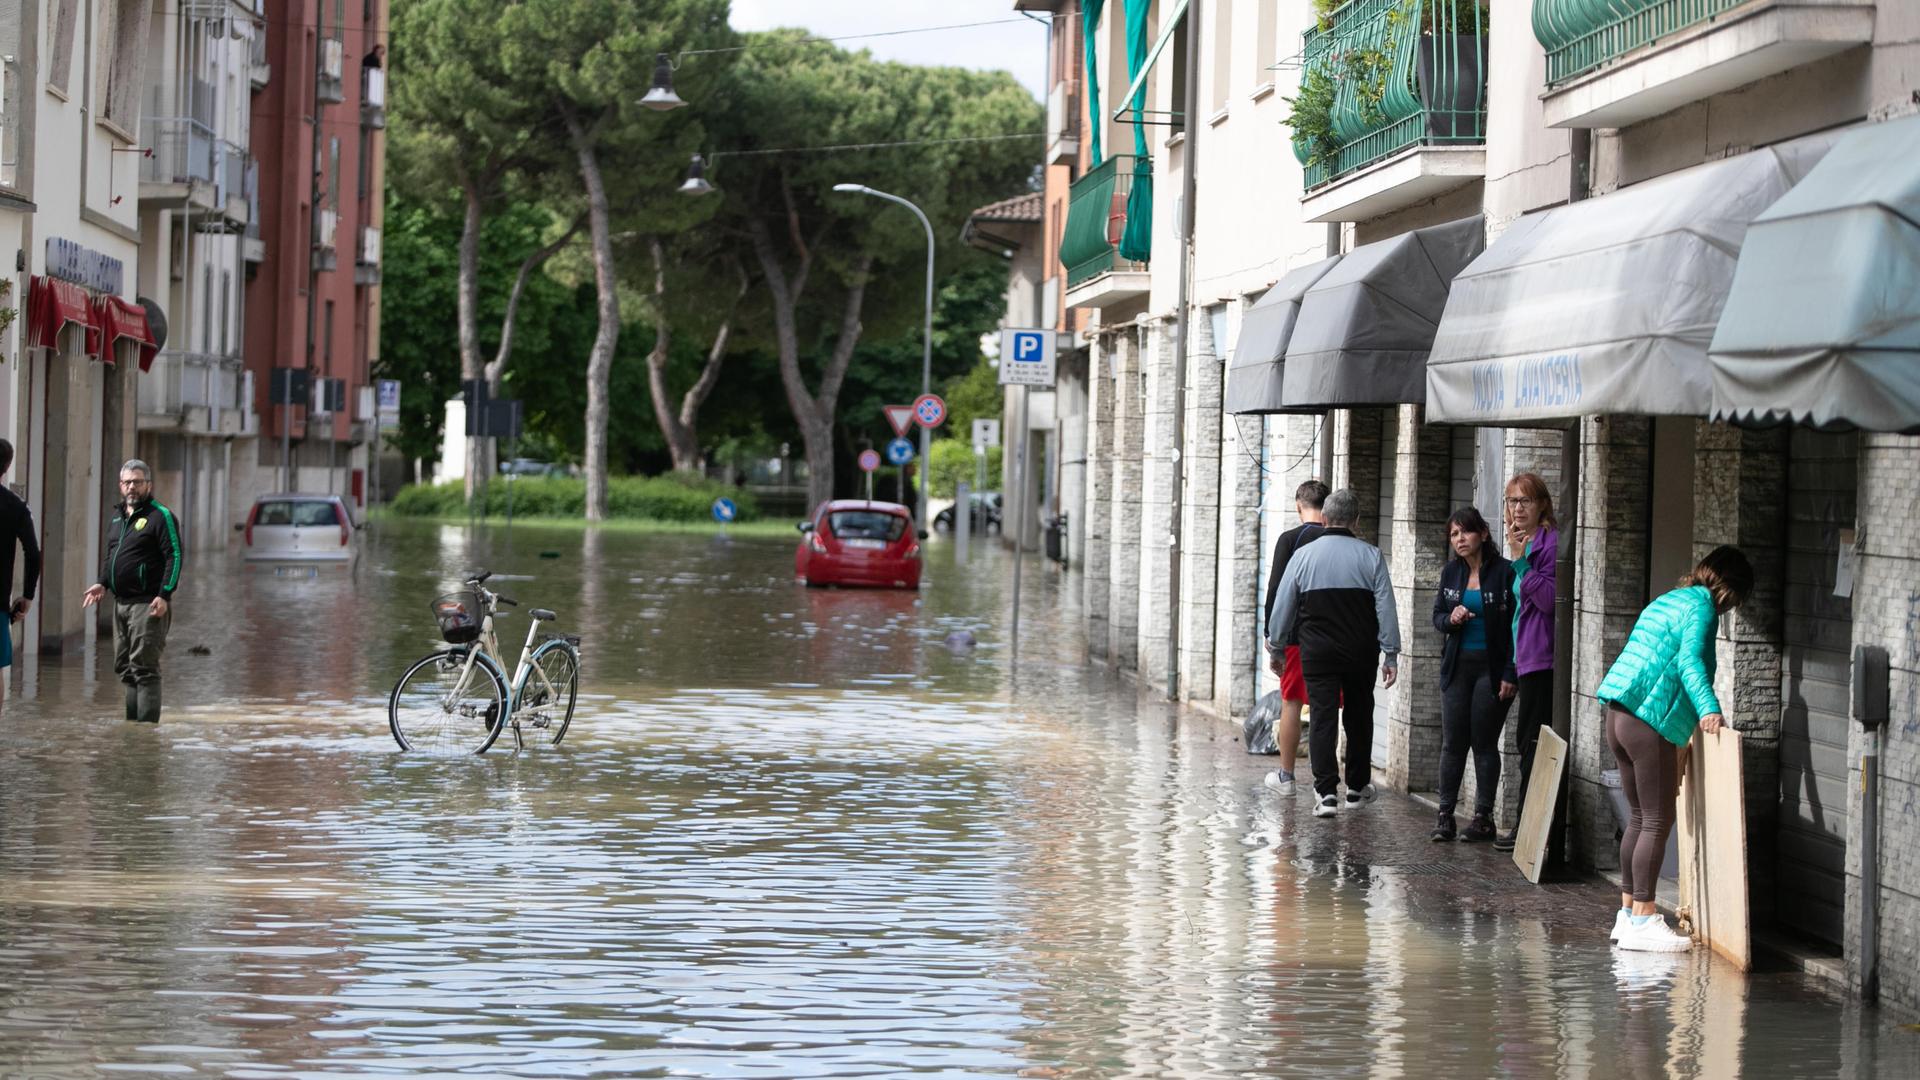 Übeschwemmte Straße, ein Fahrrad steht in der Mitte, links und rechts räumen Menschen auf